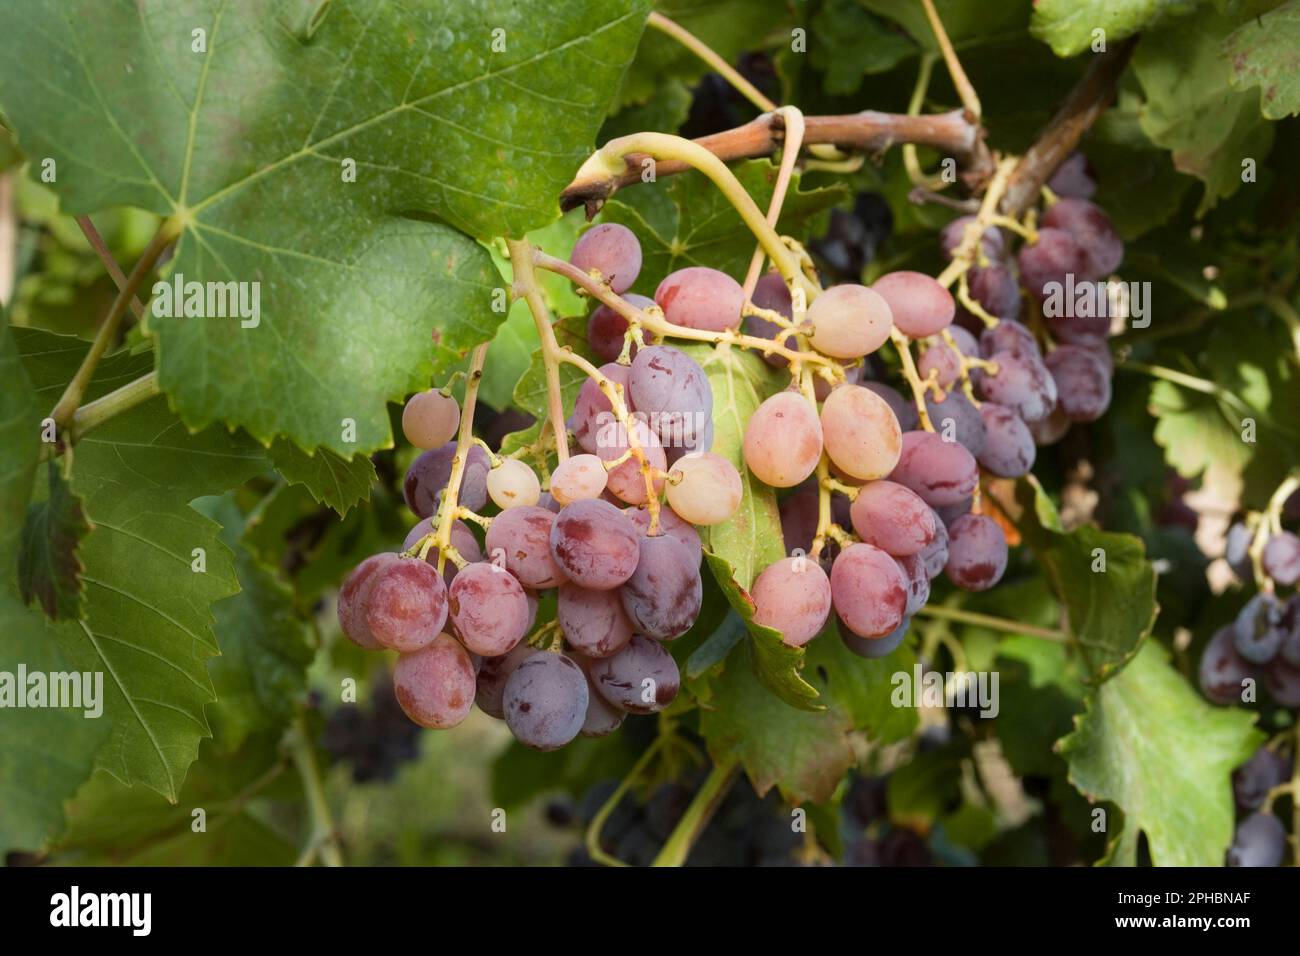 closeup of bunch of grapes in grape farm grappolo d'uva e foglie di vite Stock Photo